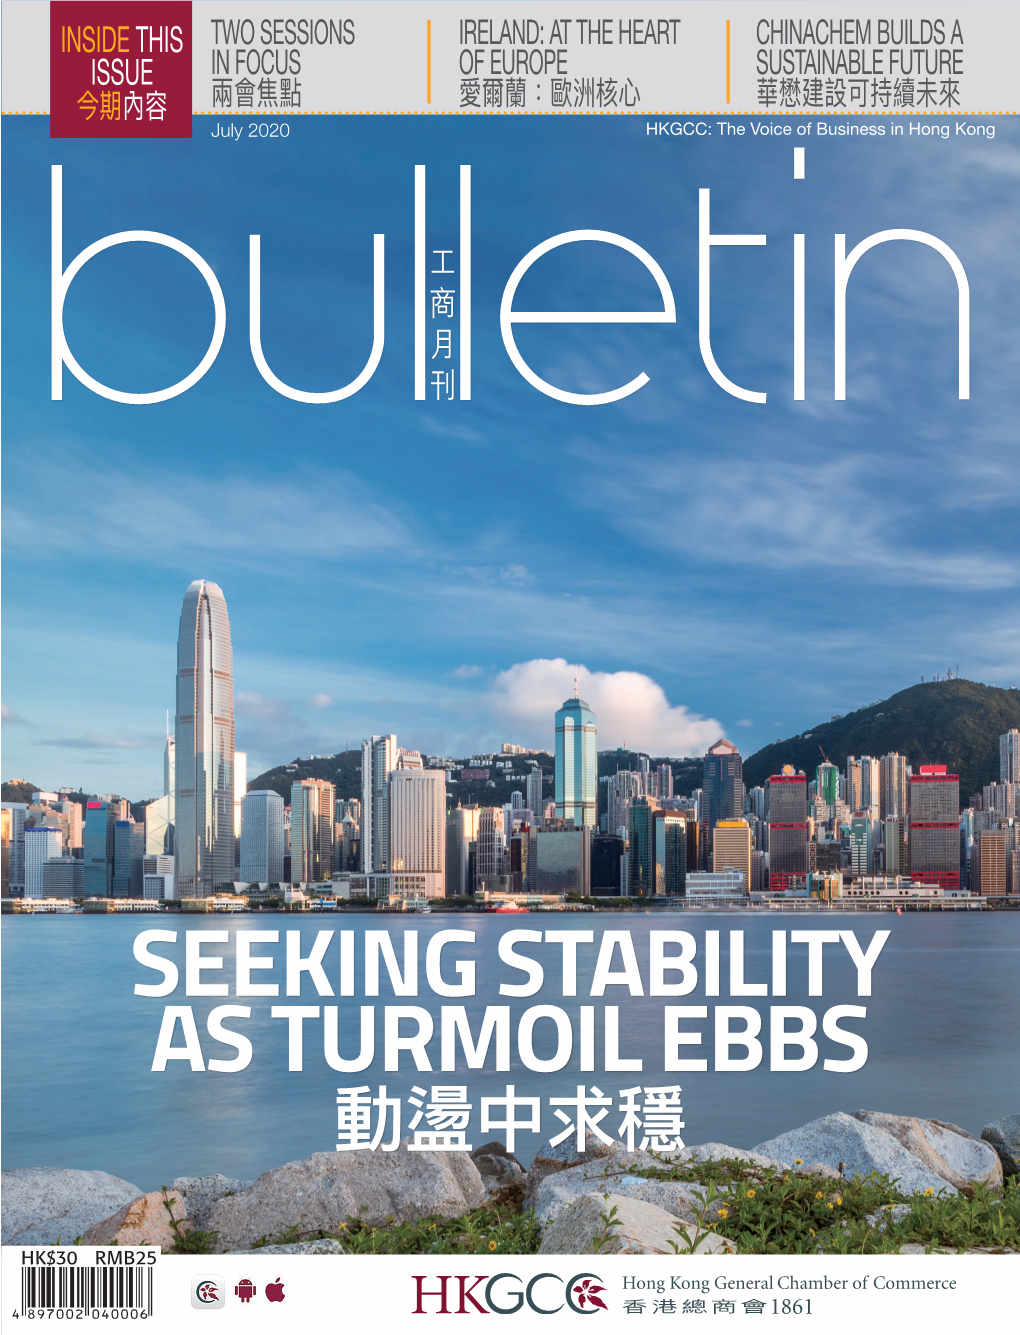 Seeking Stability As Turmoil Ebbs 動盪中求穩 Jul 2020 Jul